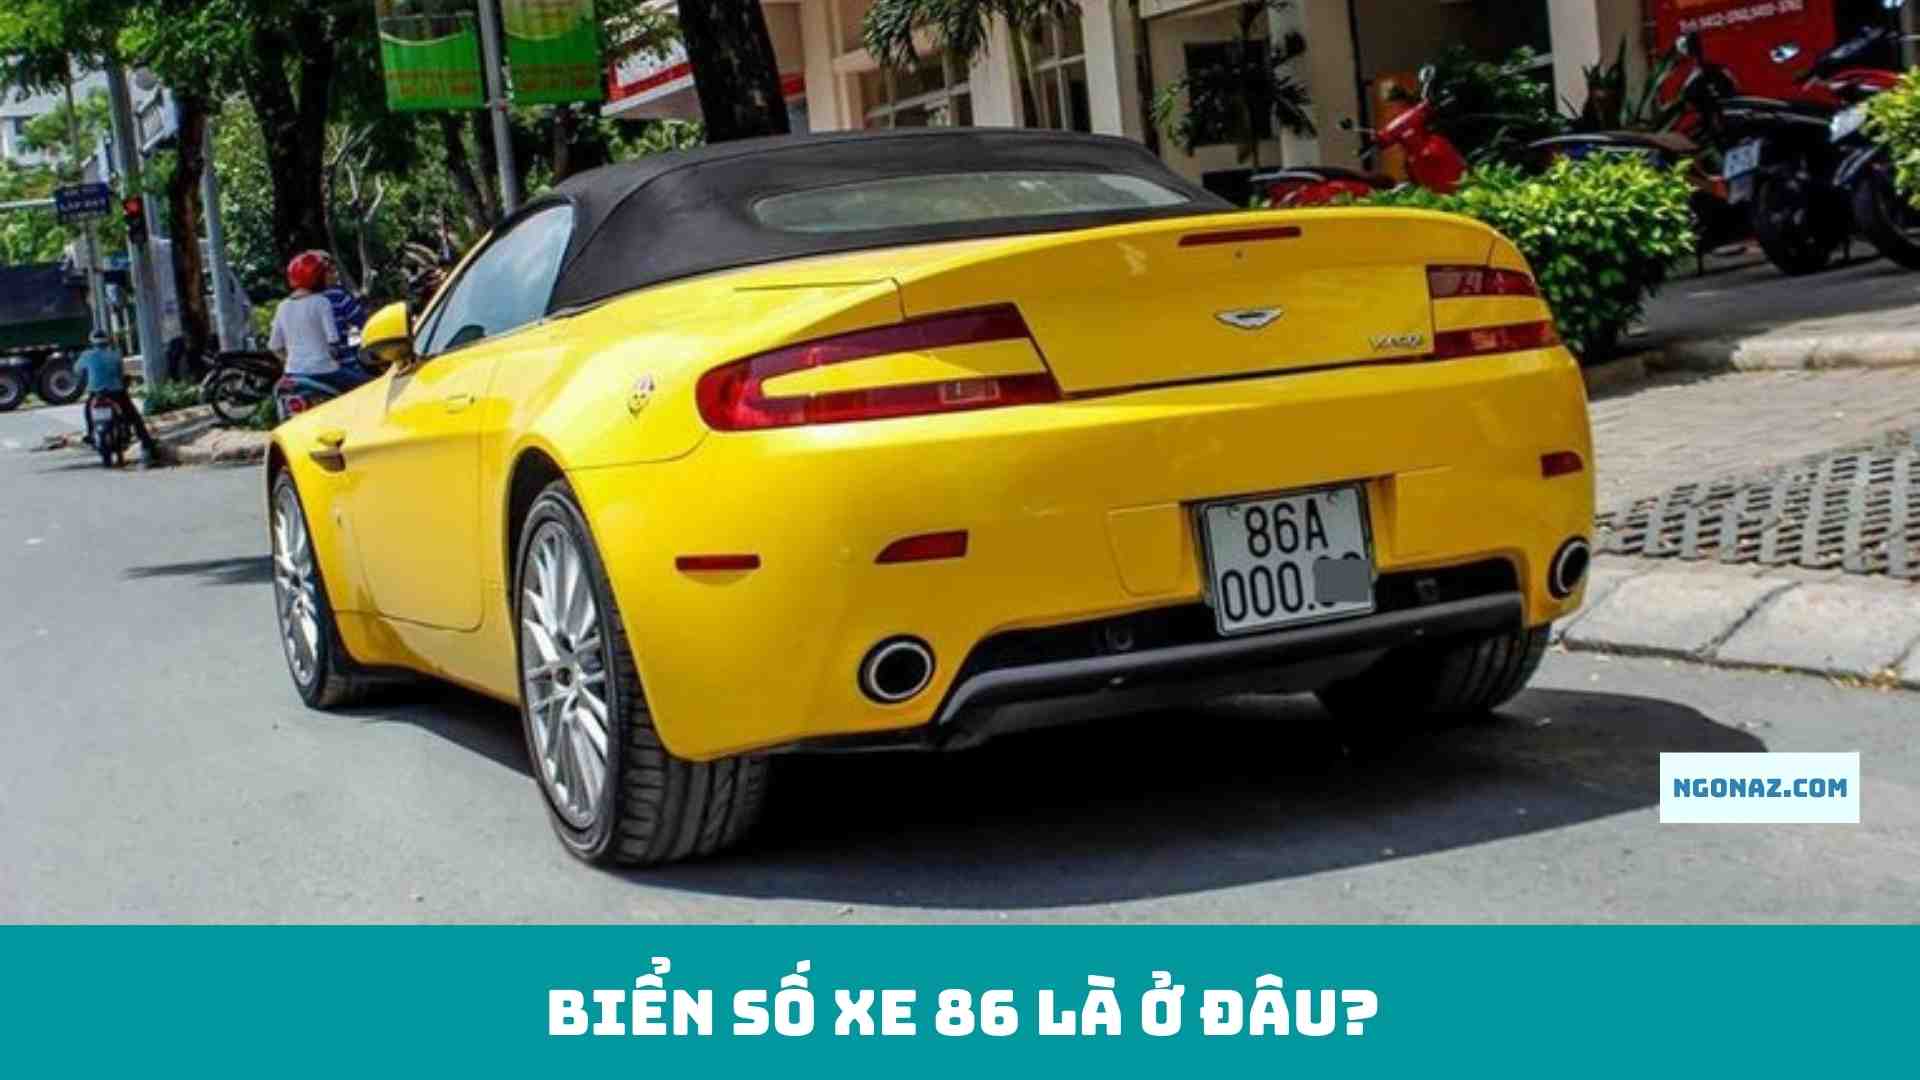 Biển số xe ô tô và xe máy Bình Thuận